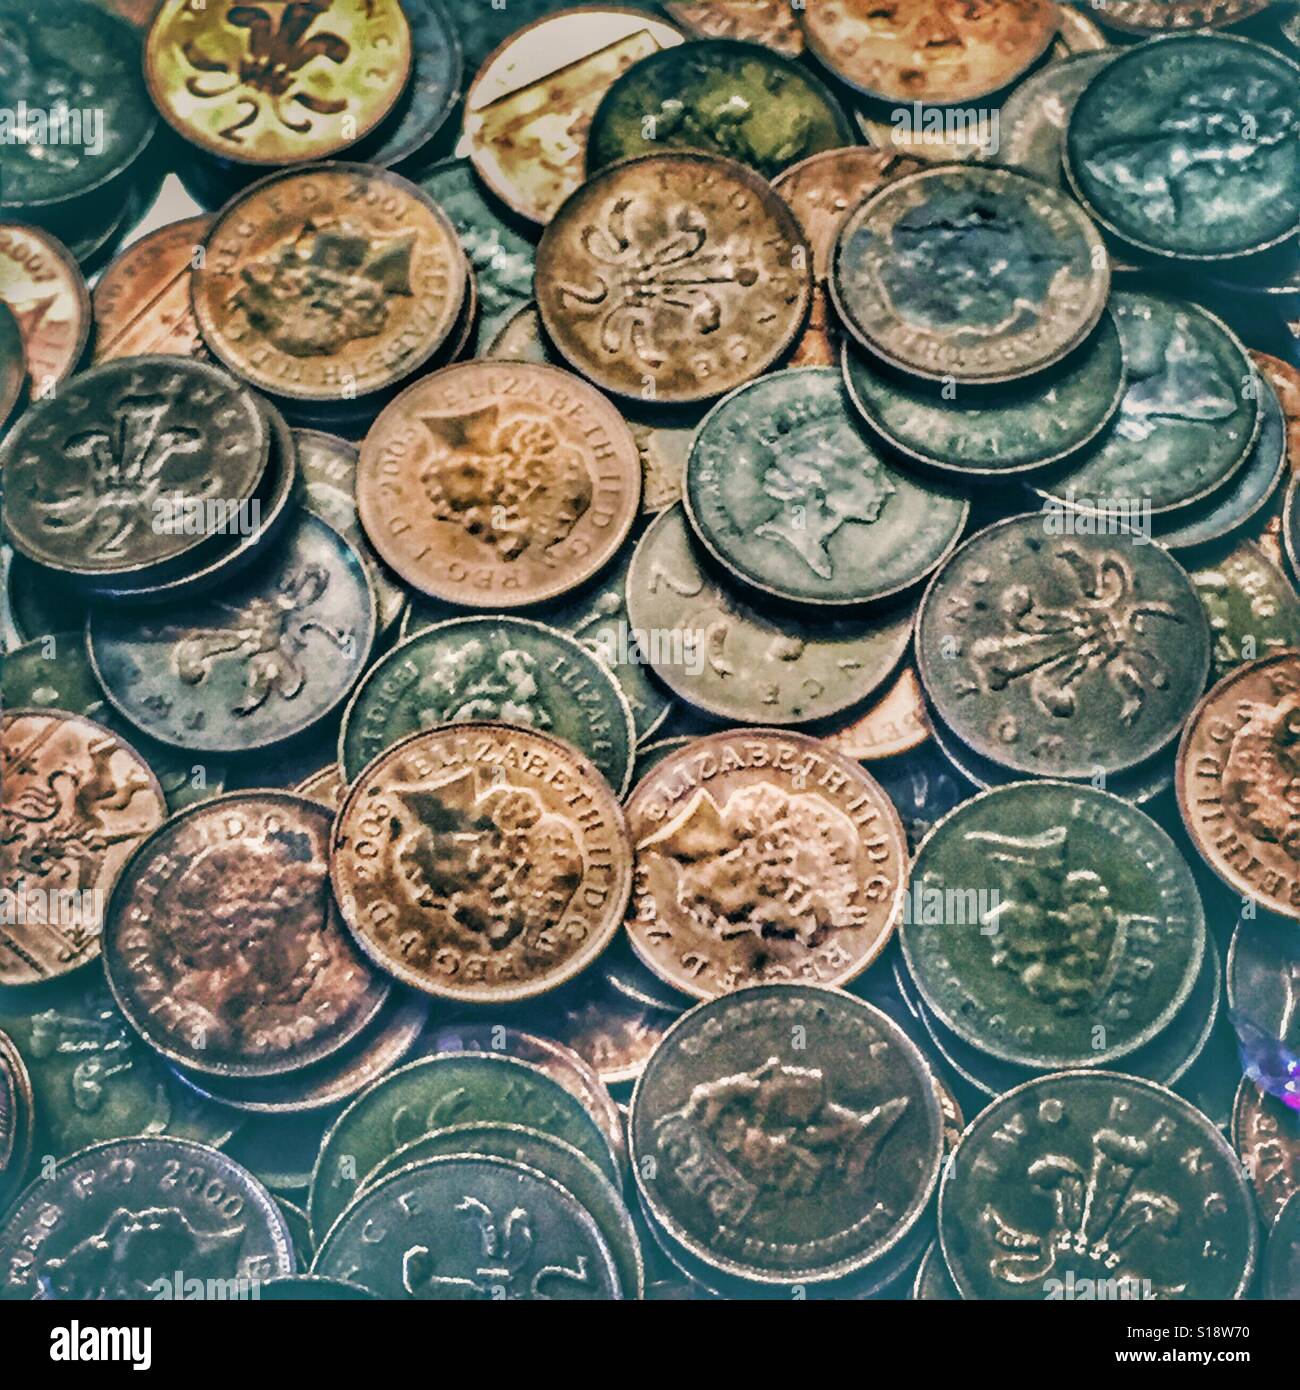 British 2p coins Stock Photo